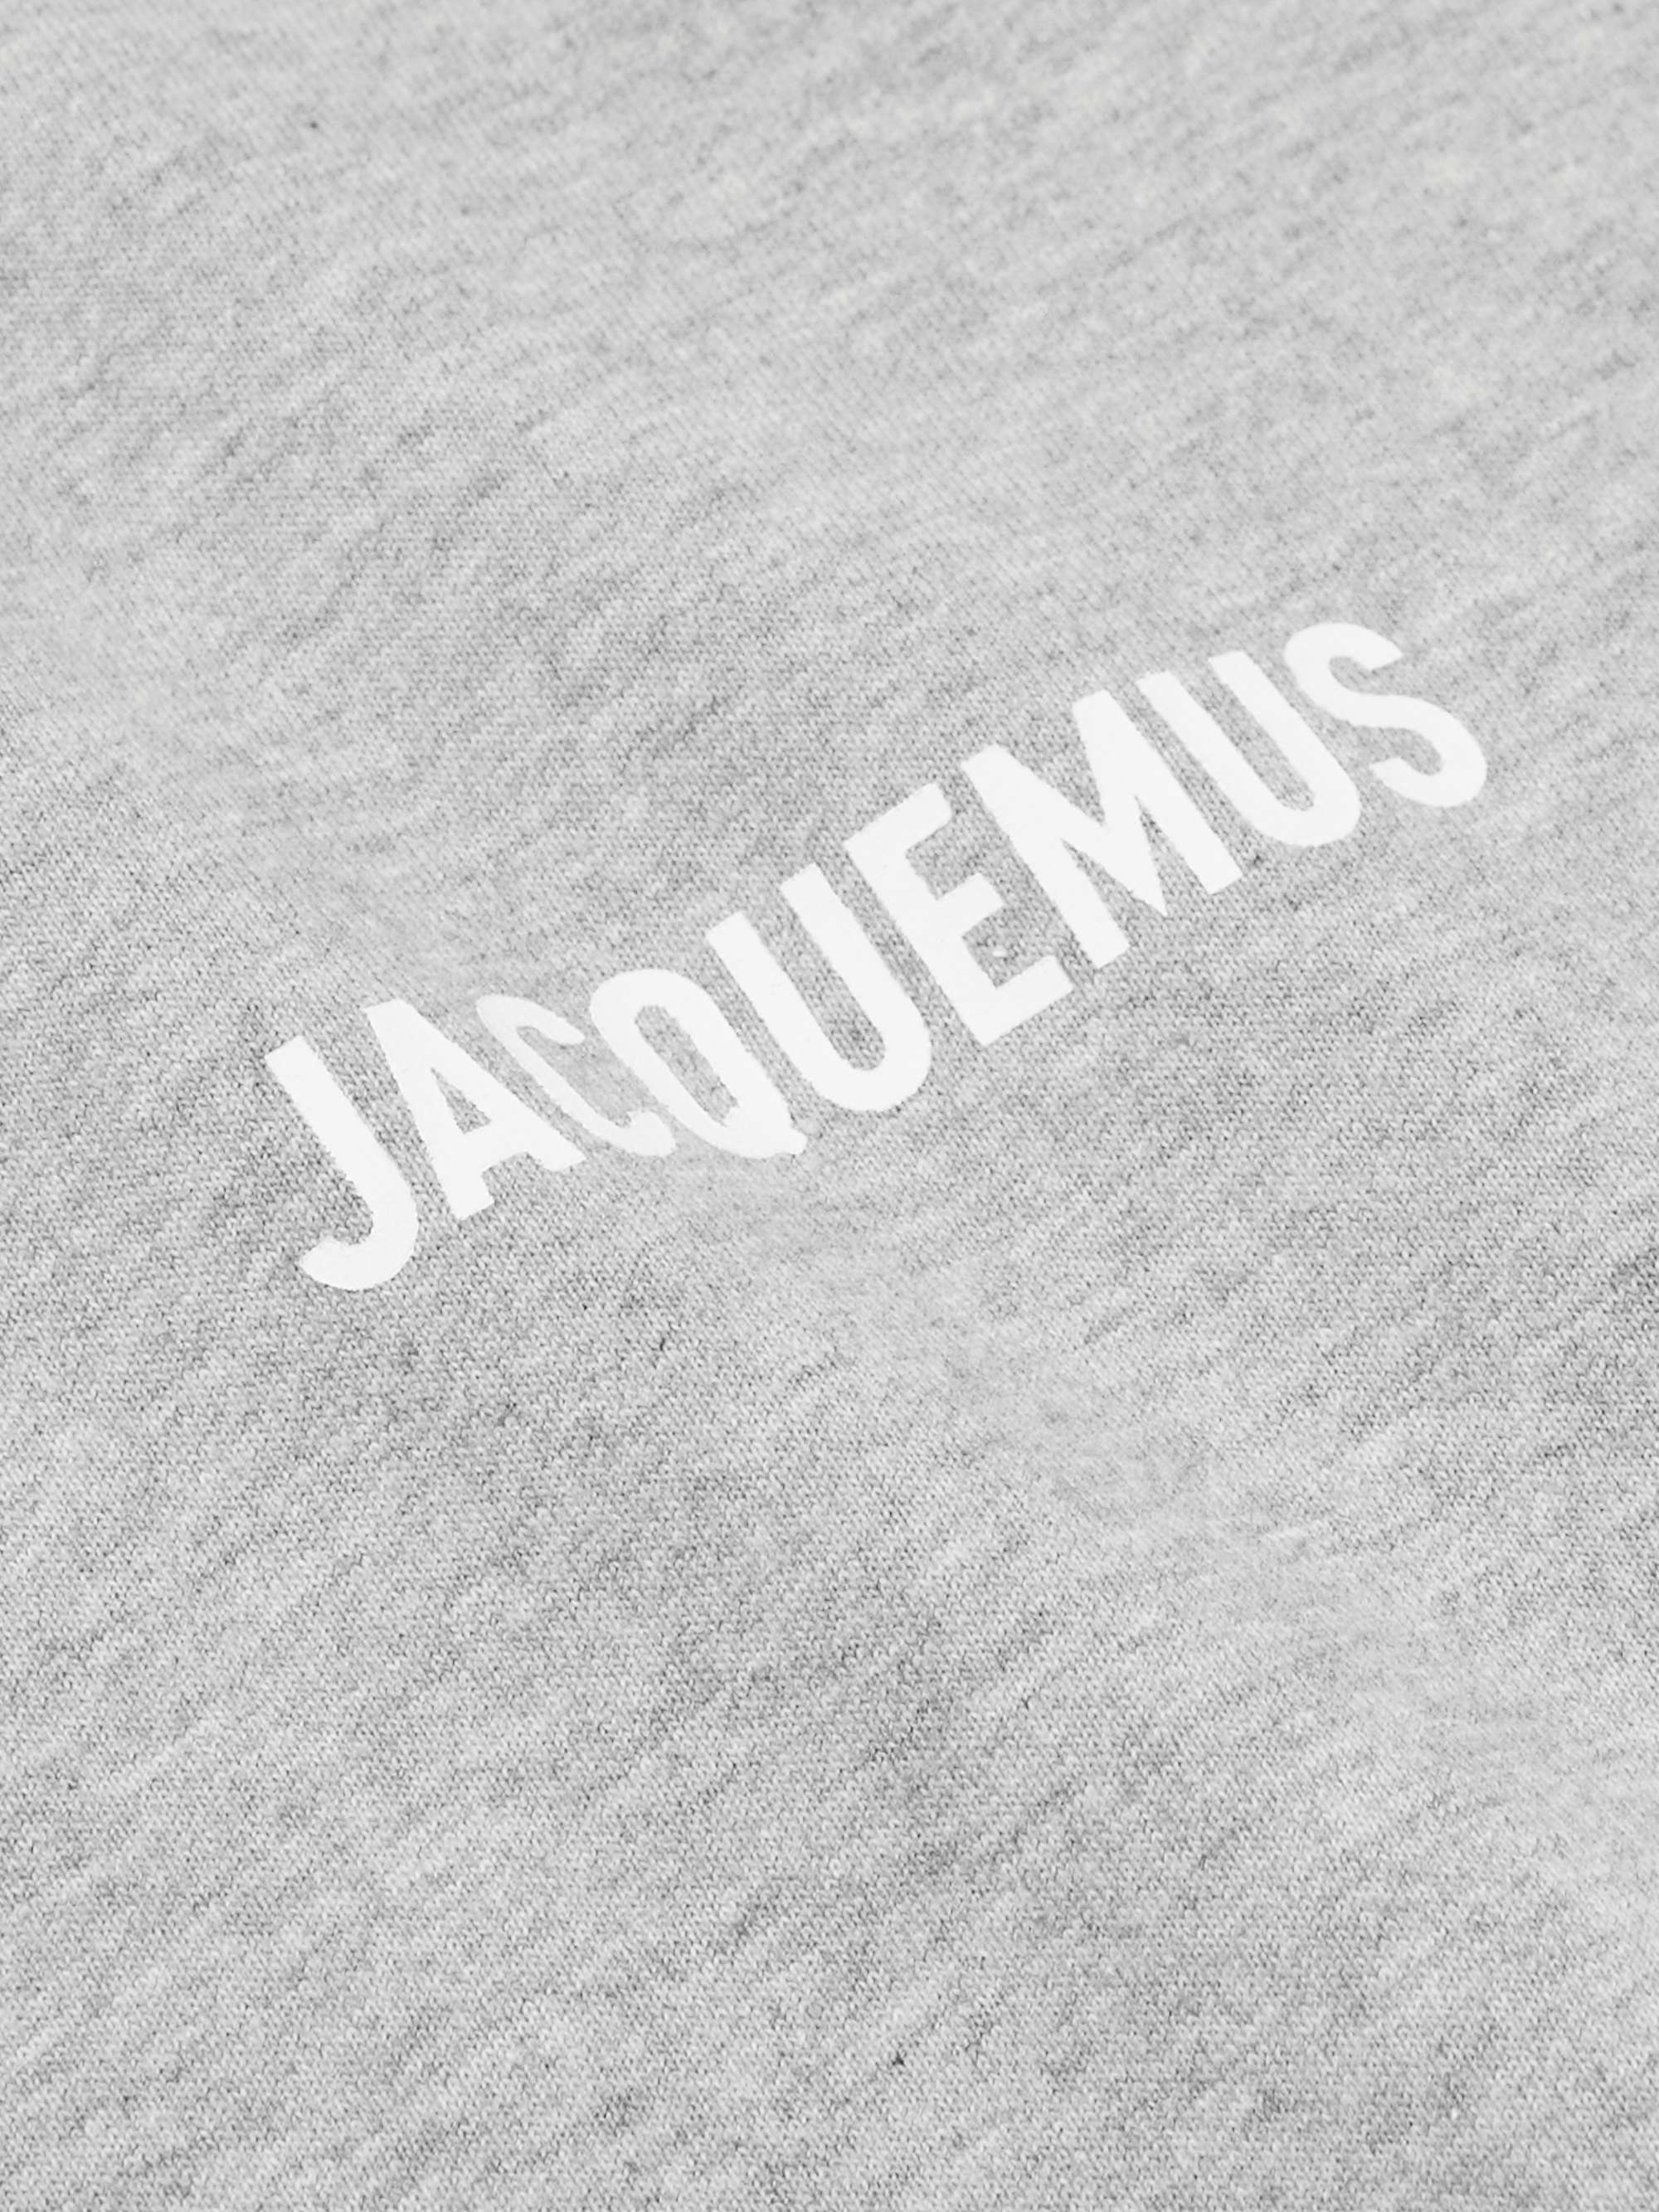 Jacquemus Logo | escapeauthority.com